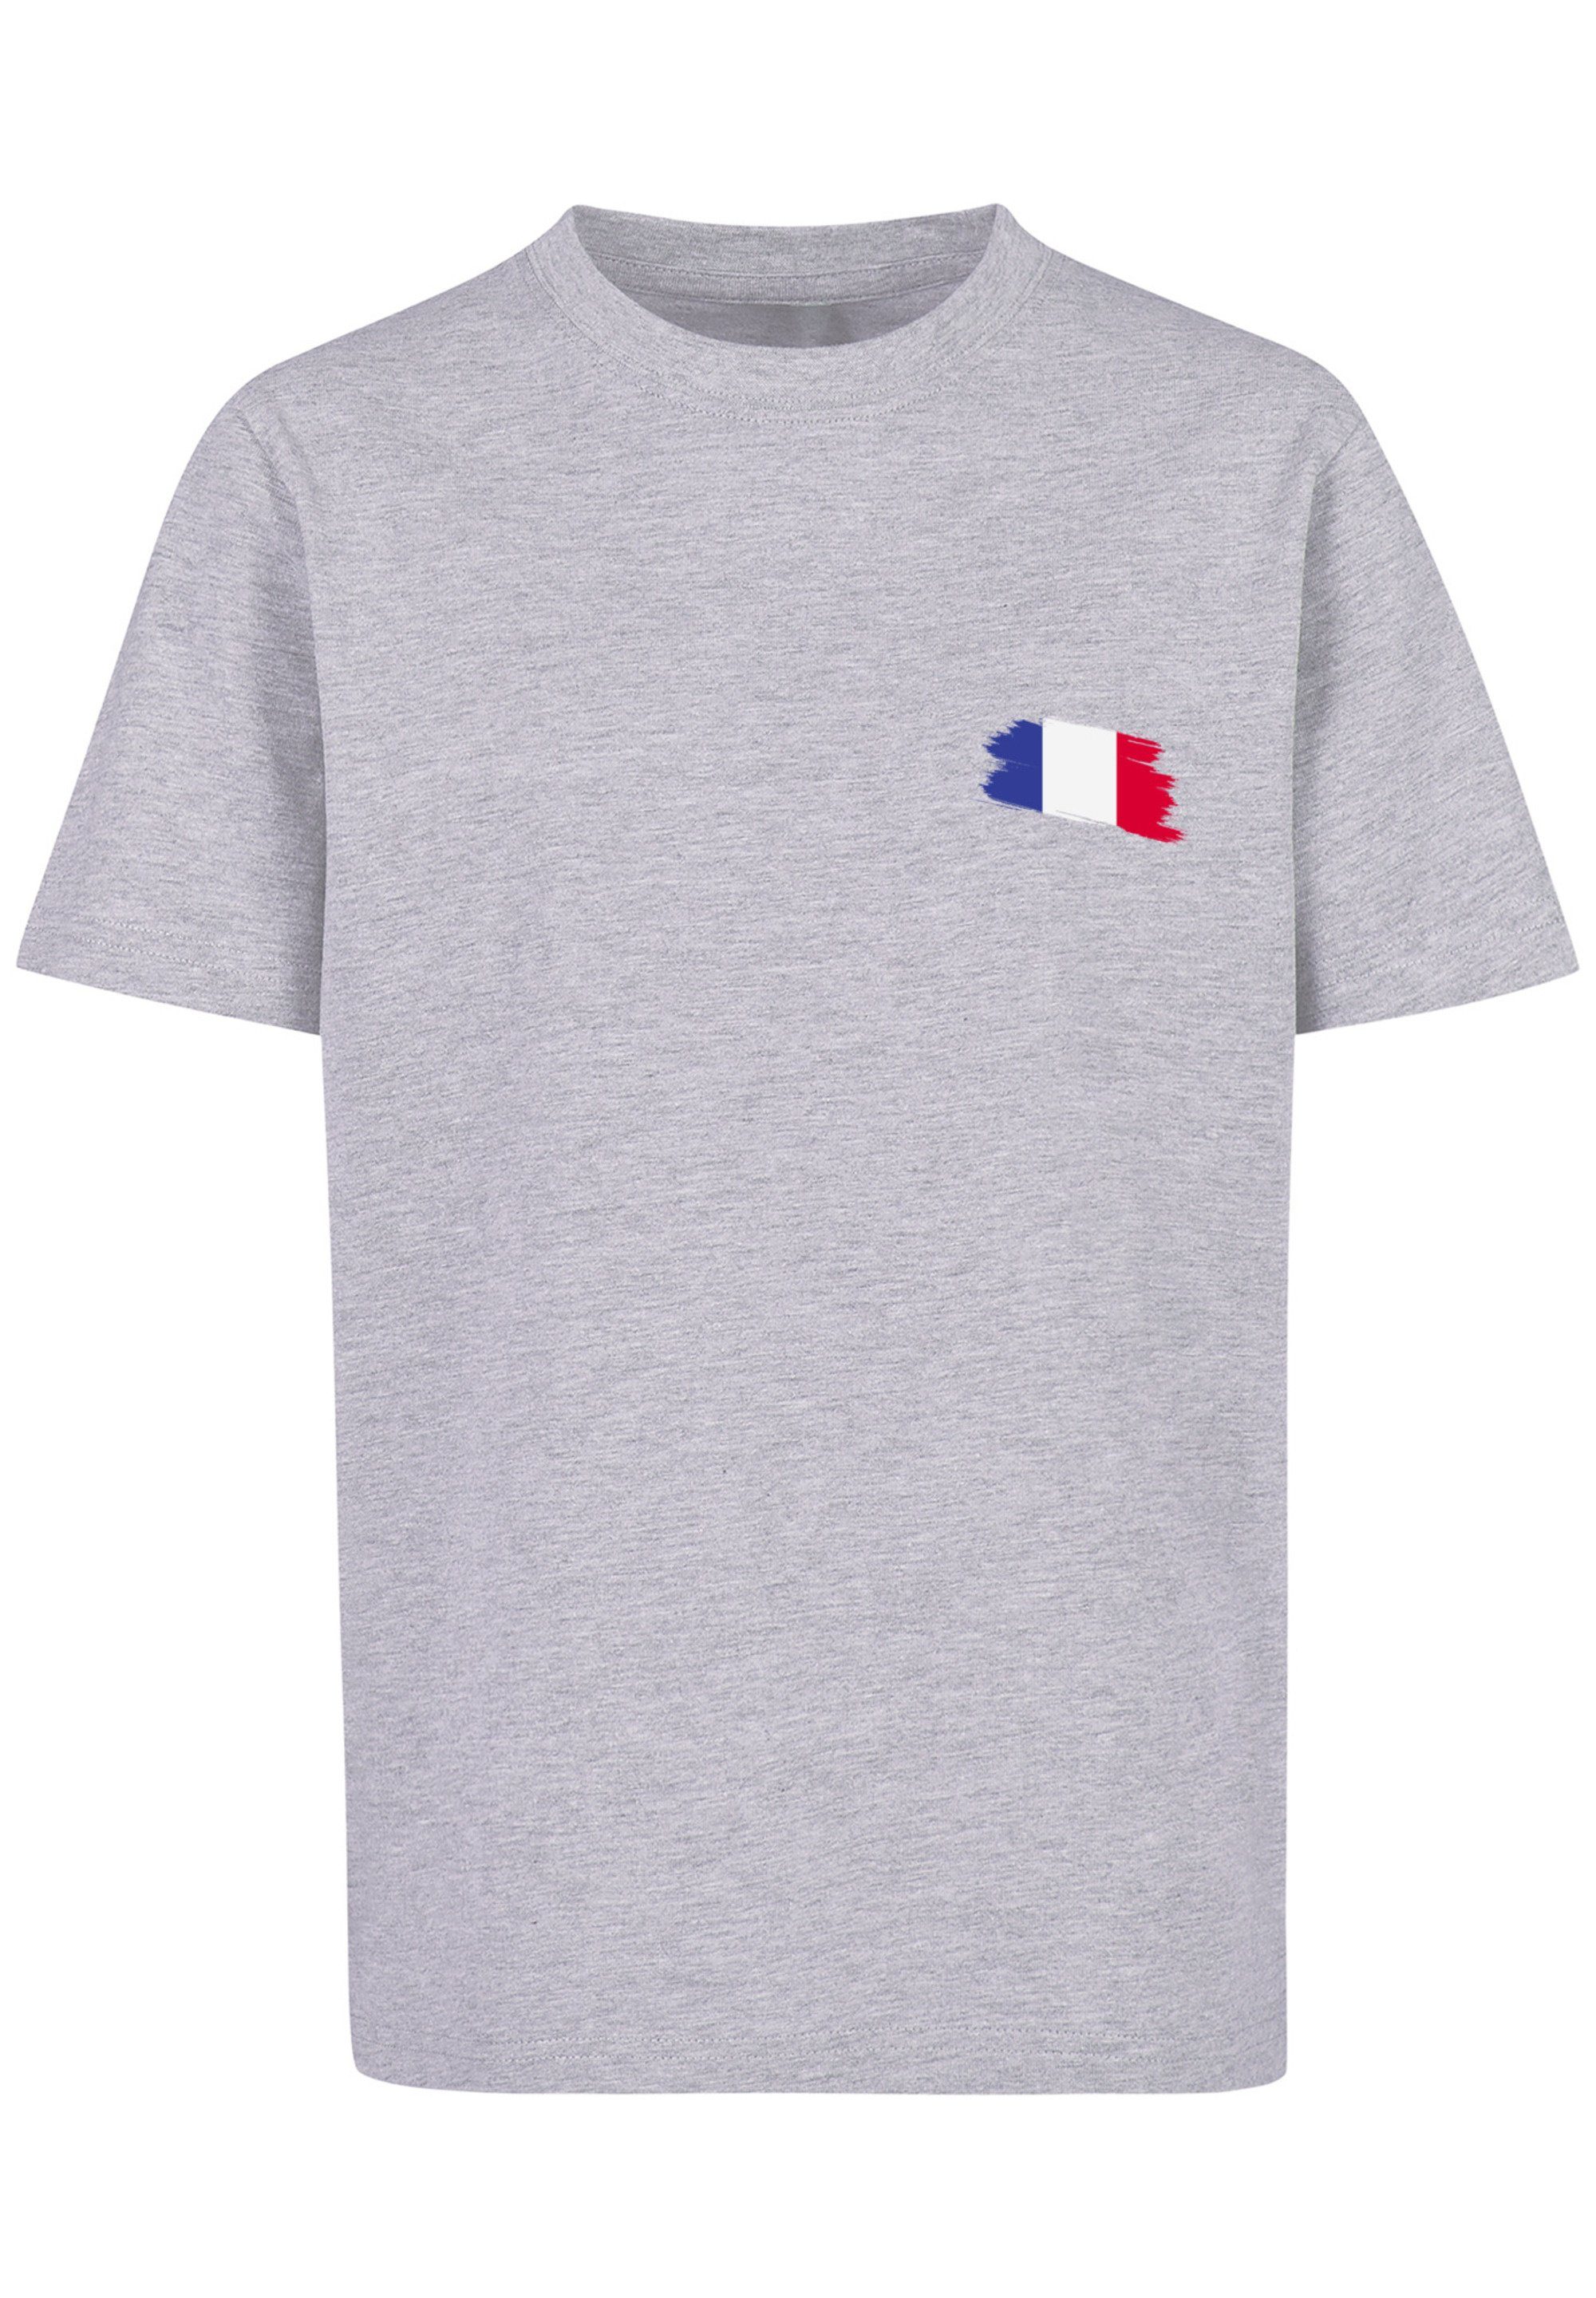 F4NT4STIC T-Shirt France grey Fahne Flagge Print Frankreich heather